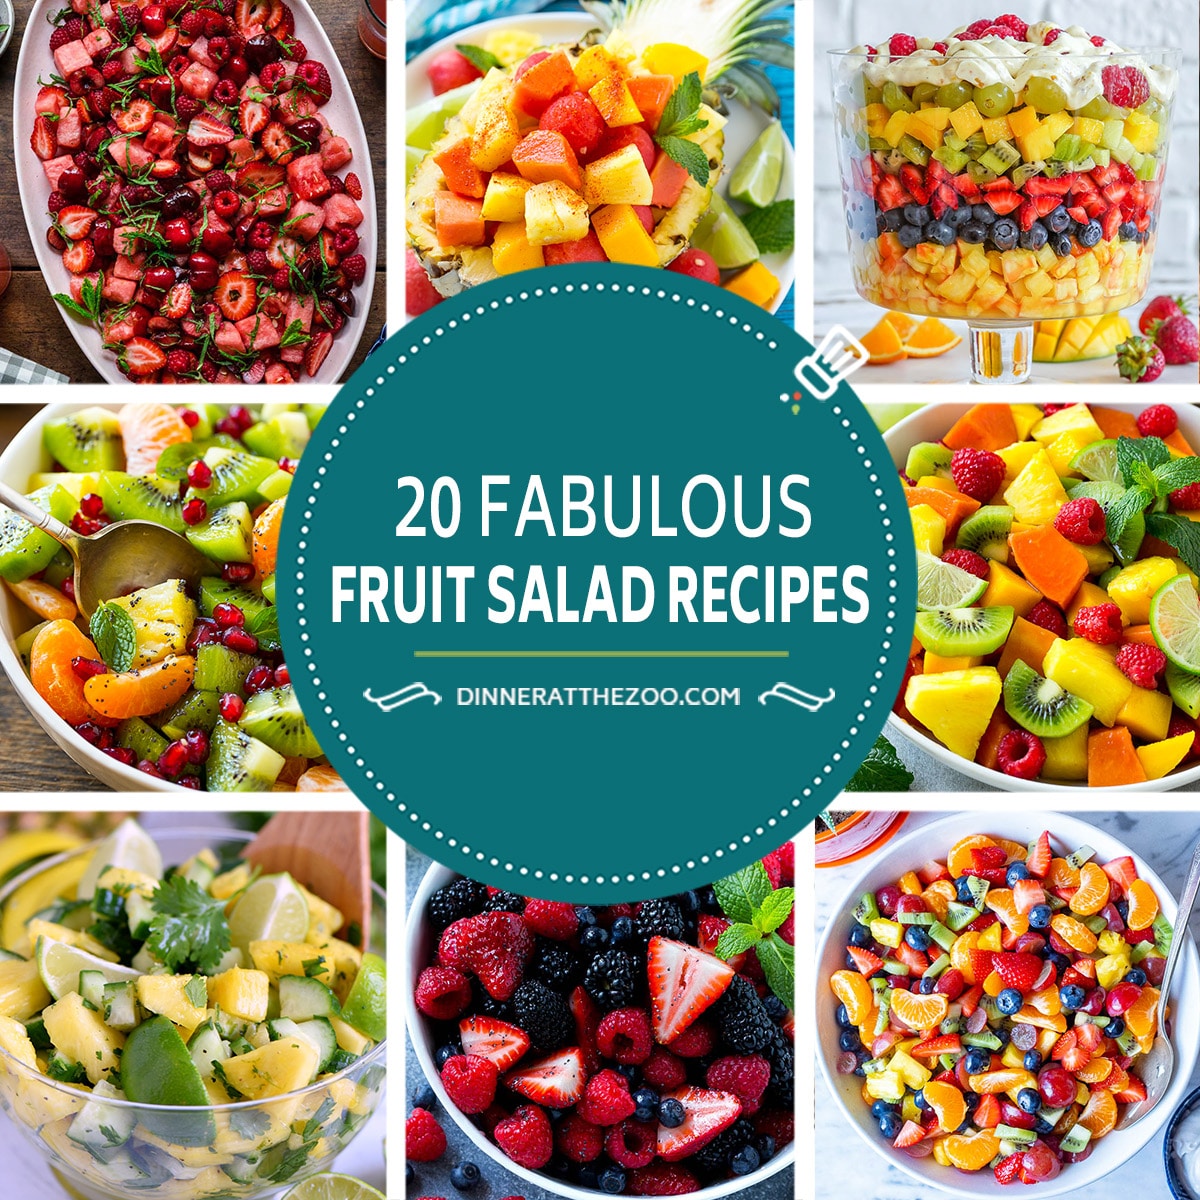 A group of fabulous fruit salad recipes like berry fruit salad and tropical fruit salad.